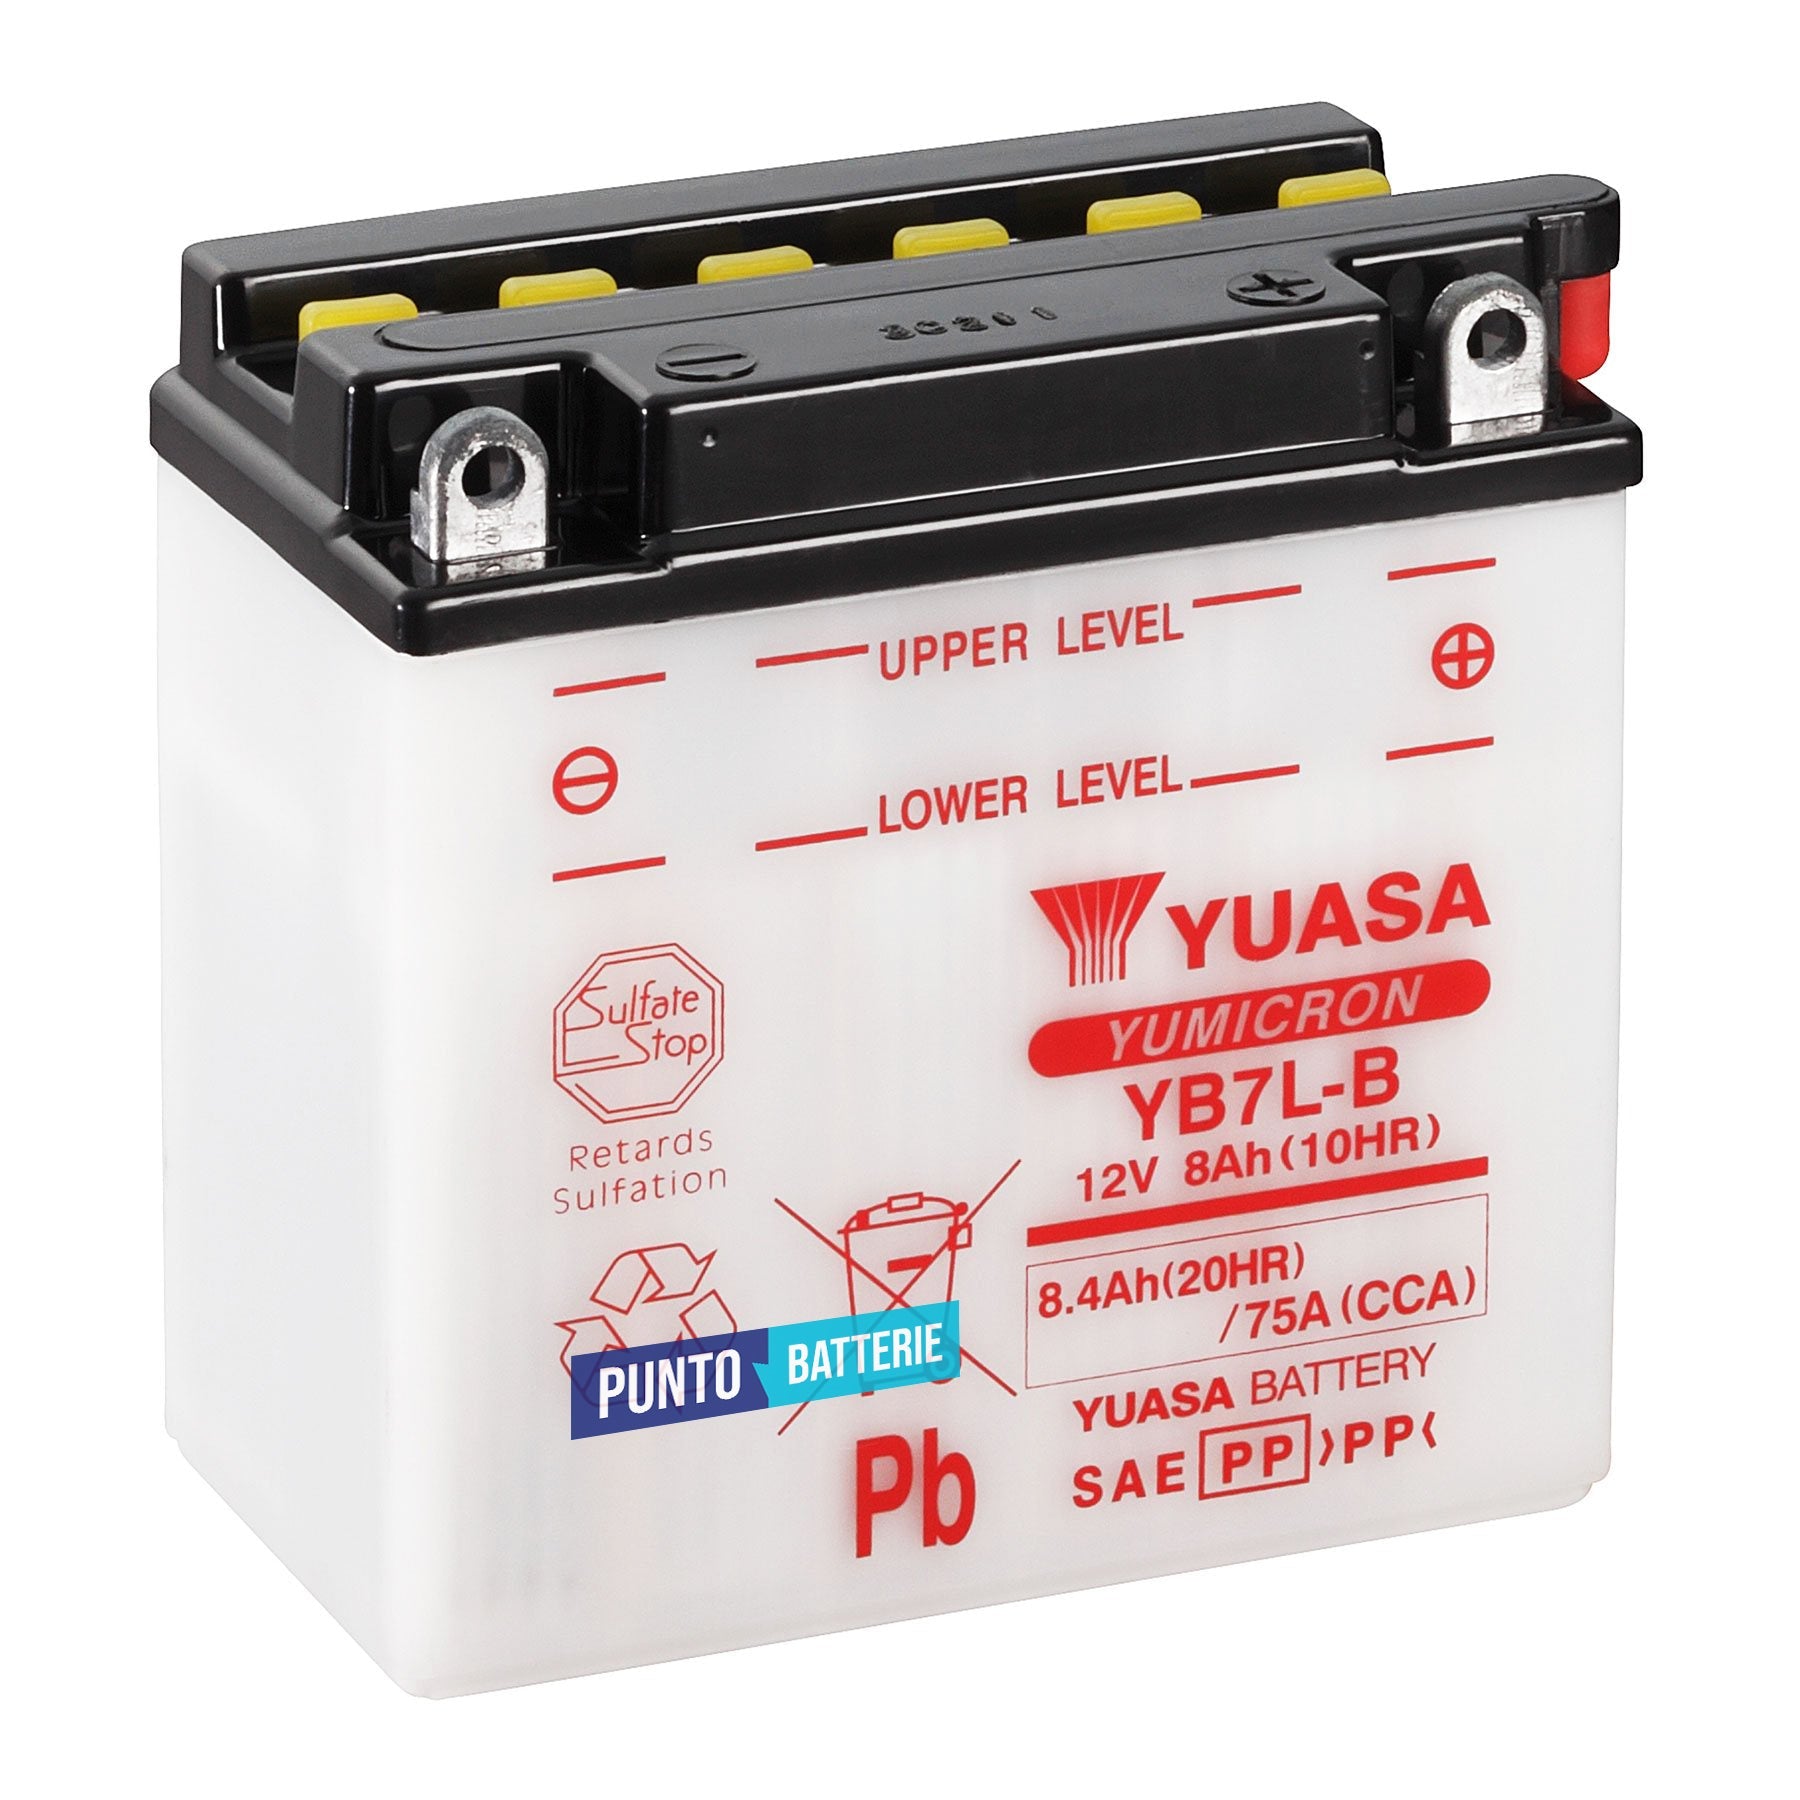 Batteria originale Yuasa YuMicron YB7L-B, dimensioni 135 x 75 x 133, polo positivo a destra, 12 volt, 8 amperora, 75 ampere. Batteria per moto, scooter e powersport.